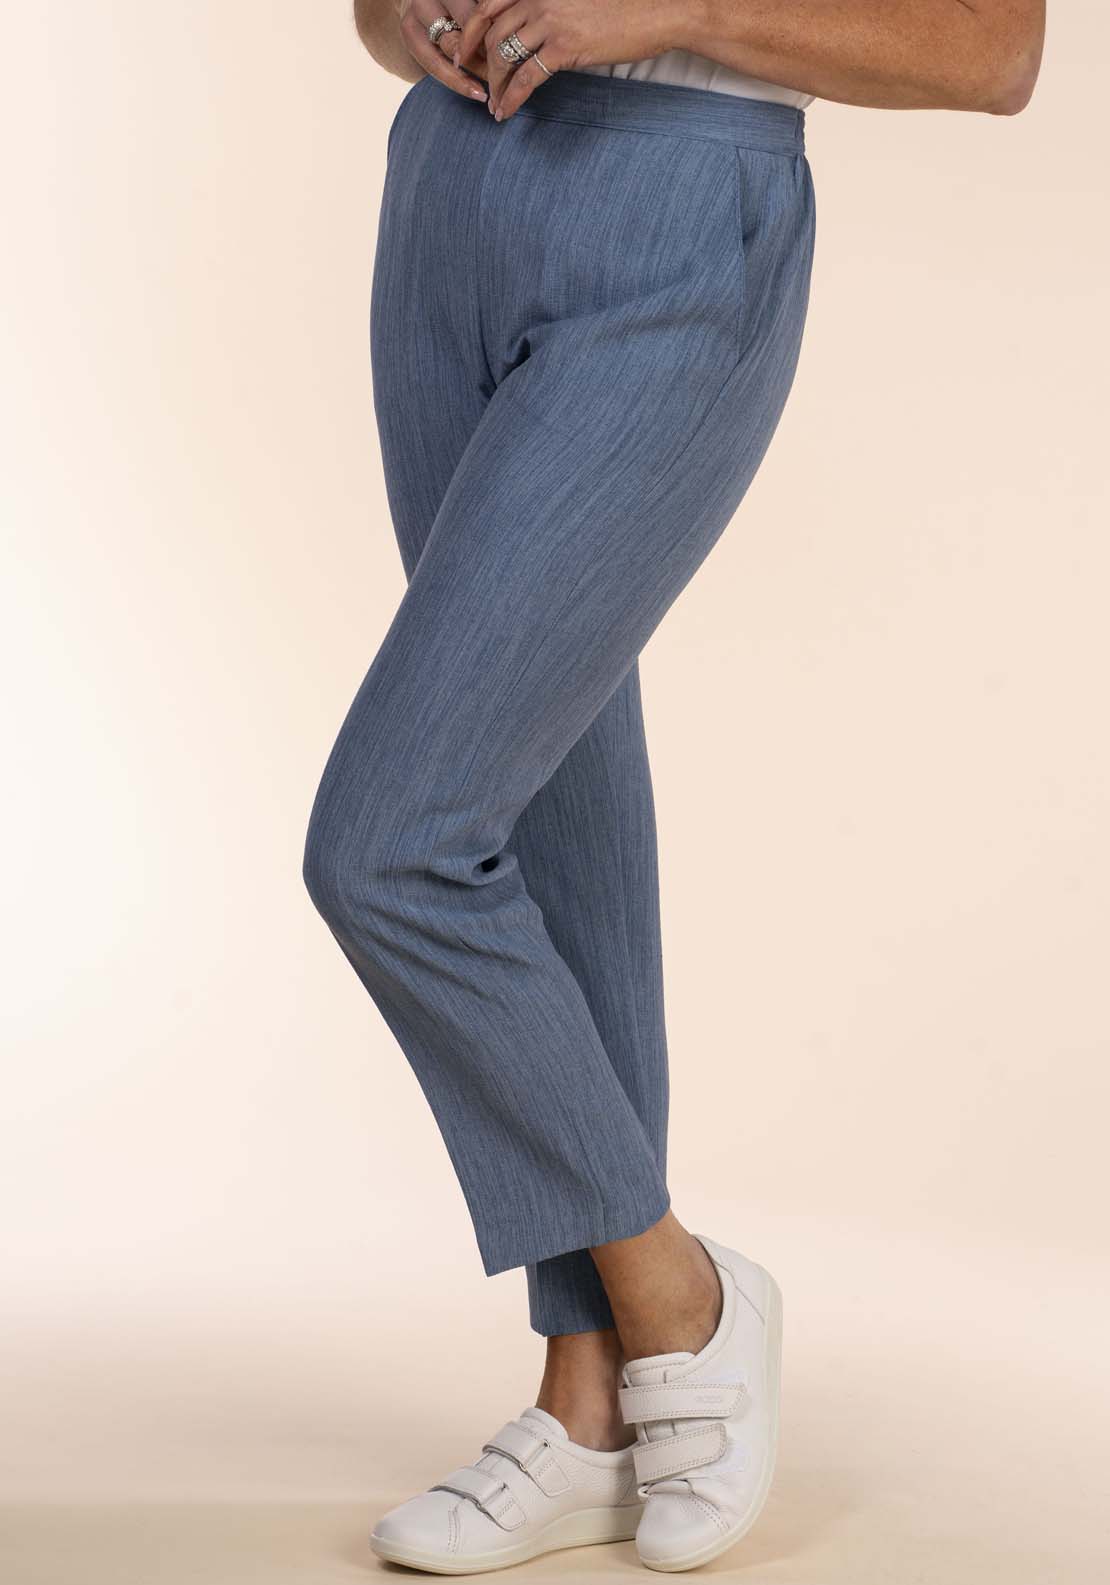 Spanx Cargo Back Pocket ZIPPER Jeans Jeggings Leggings Grey Wash XL UK  20-22 for sale online